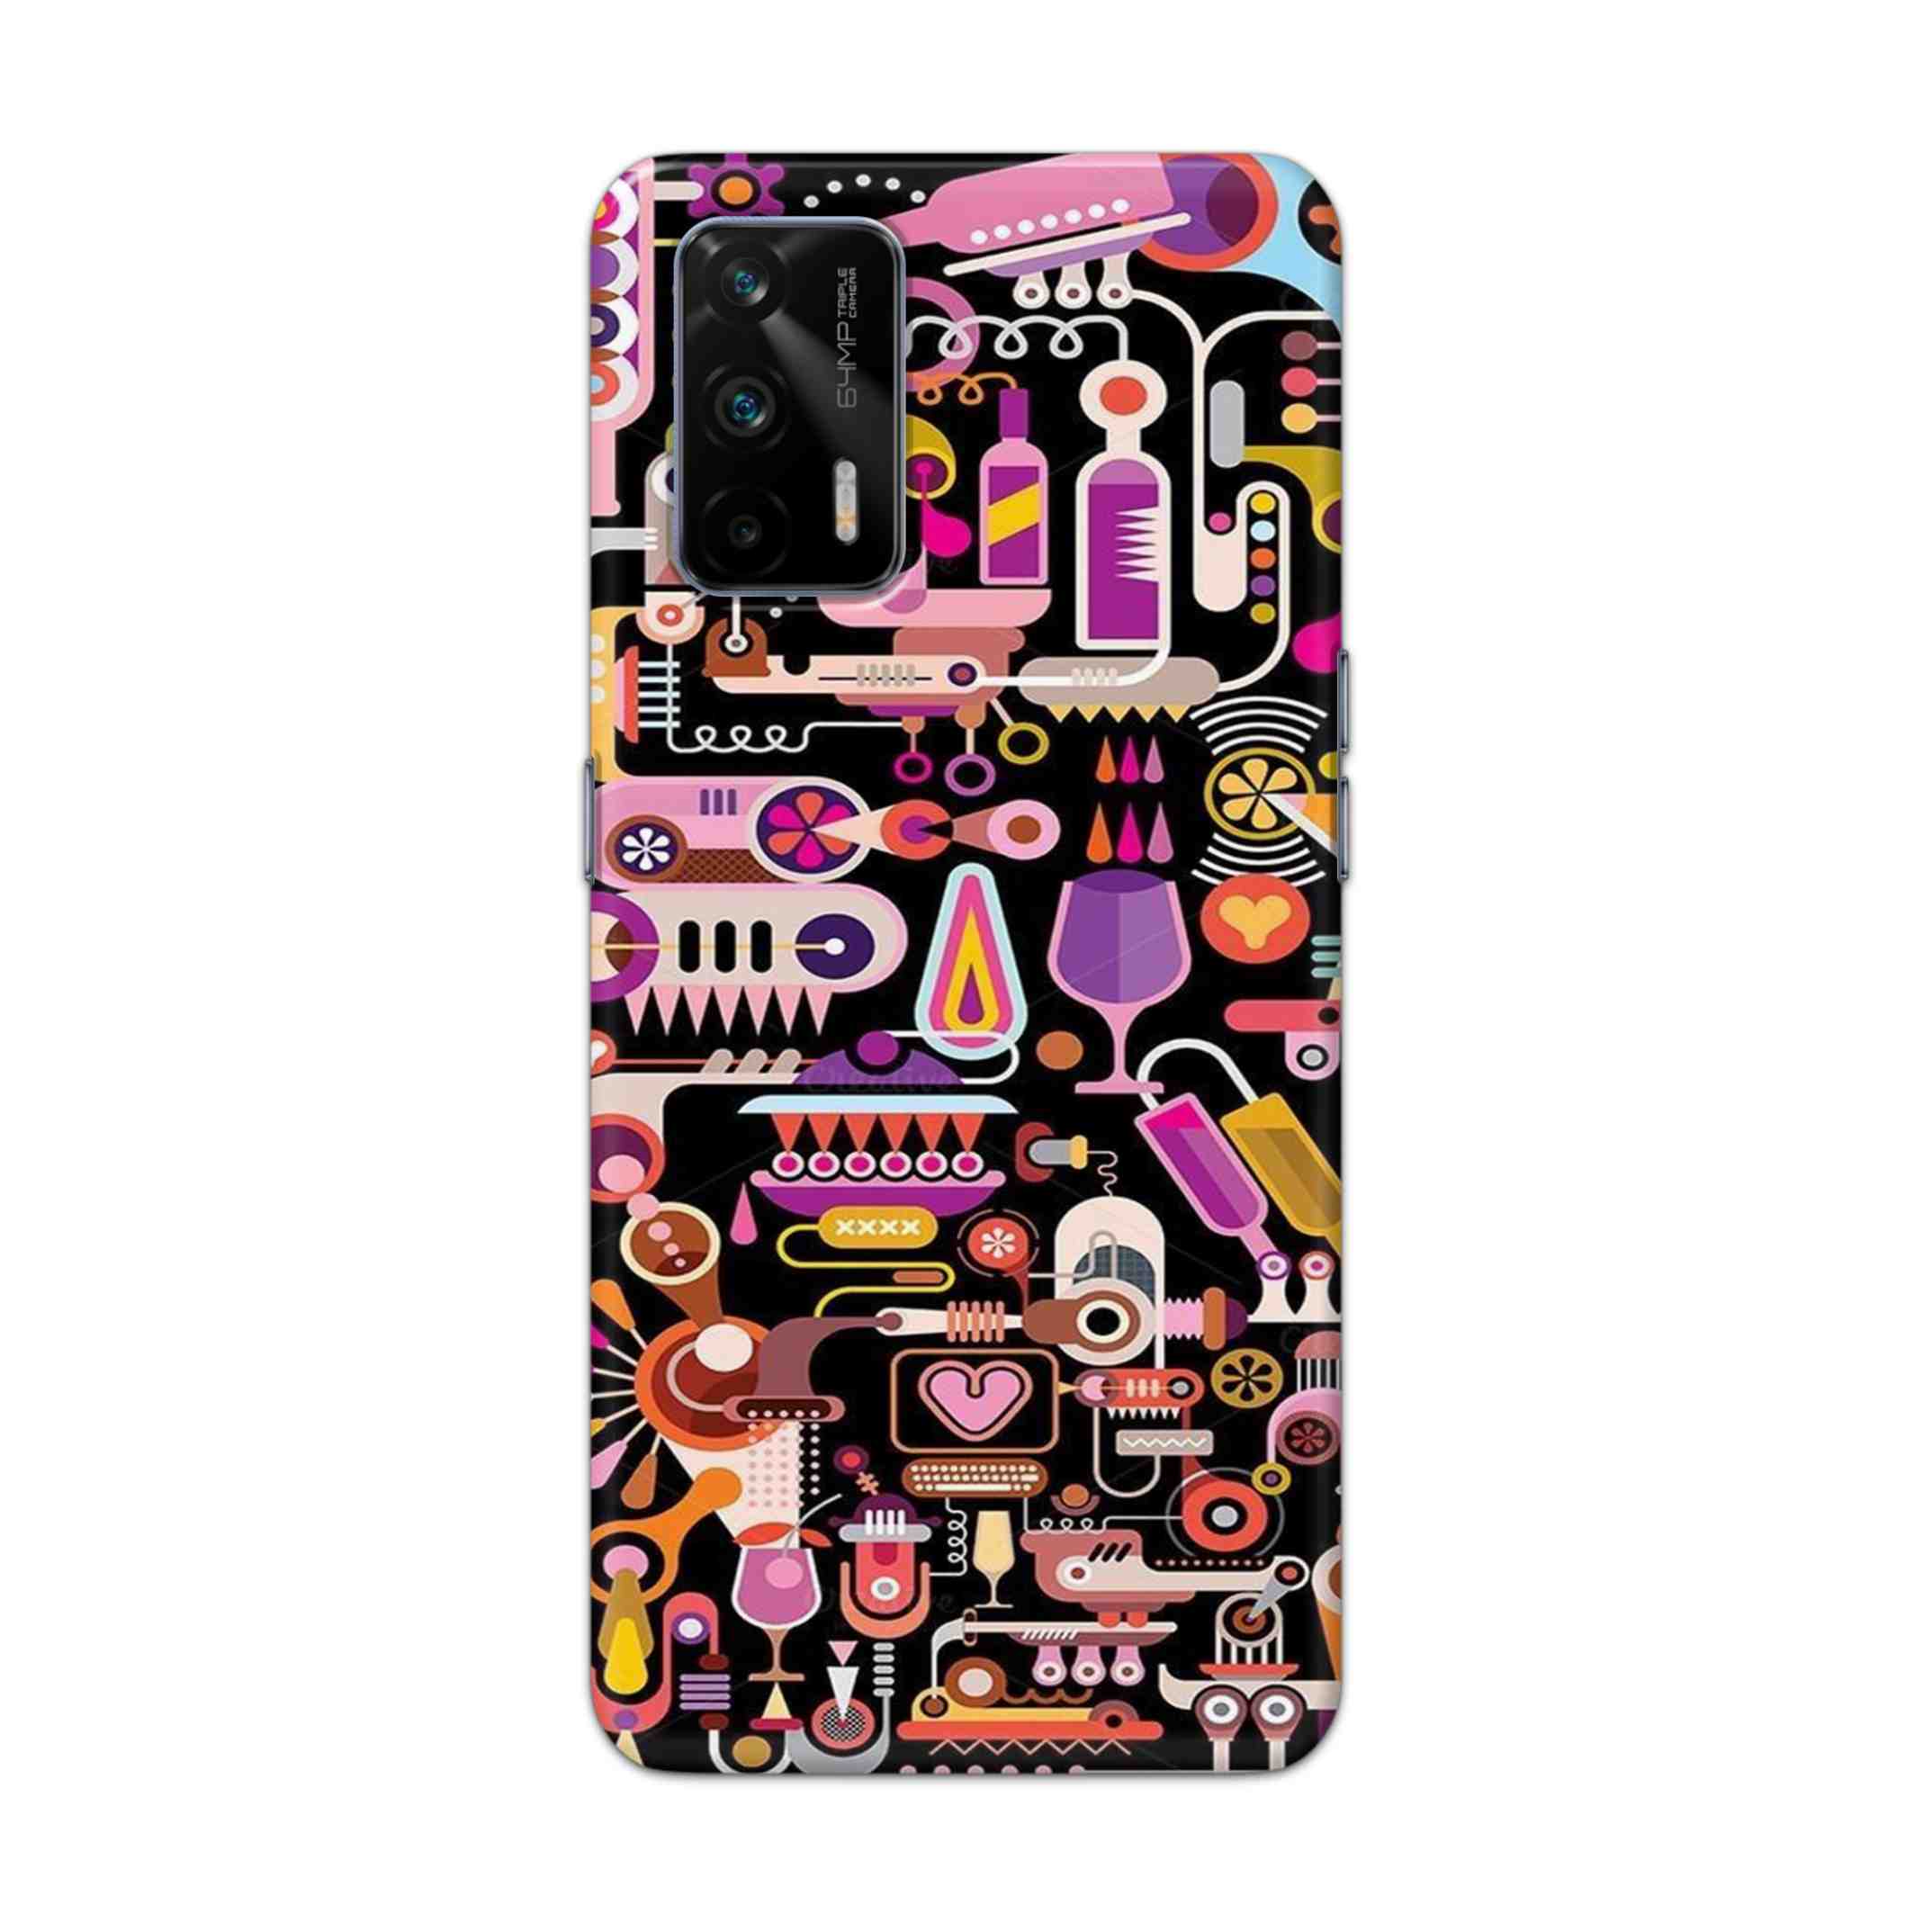 Buy Lab Art Hard Back Mobile Phone Case Cover For Realme GT 5G Online